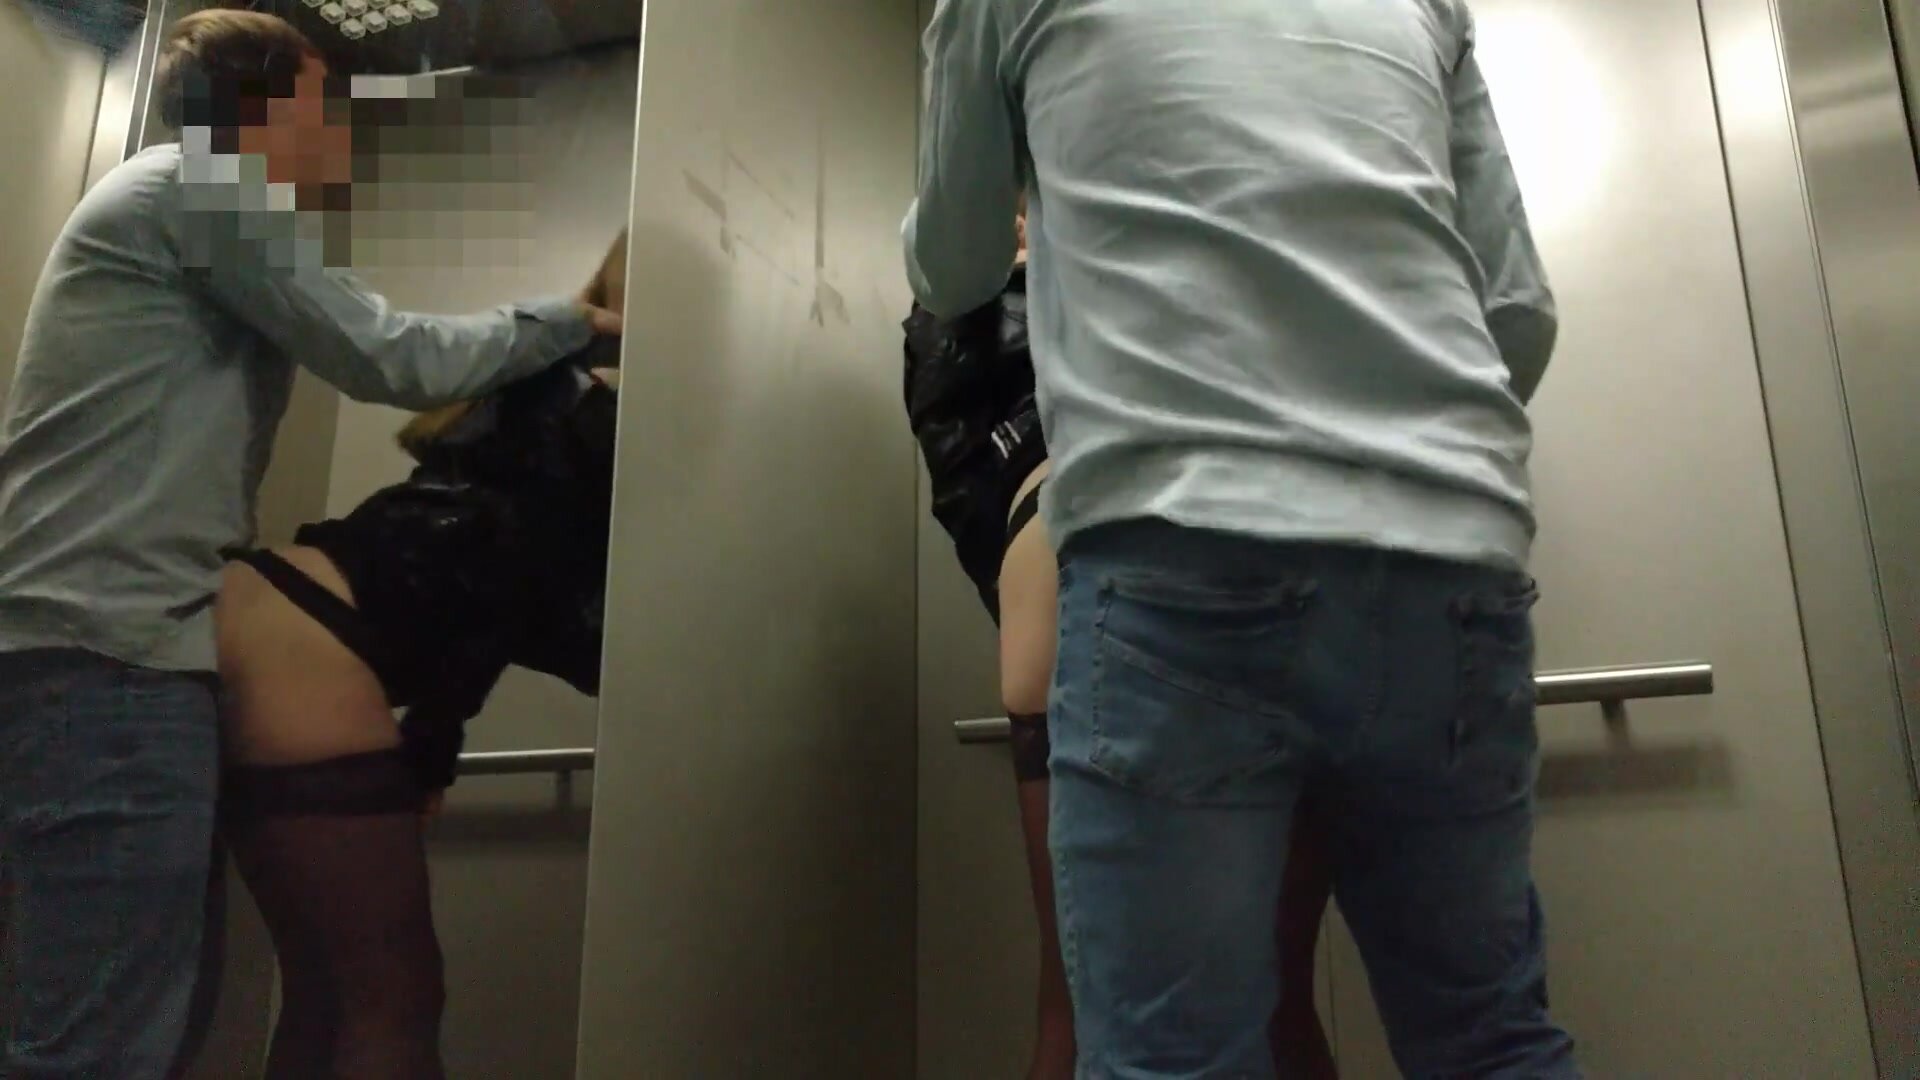 Un couple de voyeurs fait du sexe en public à risque dans un ascenseur Photo adulte